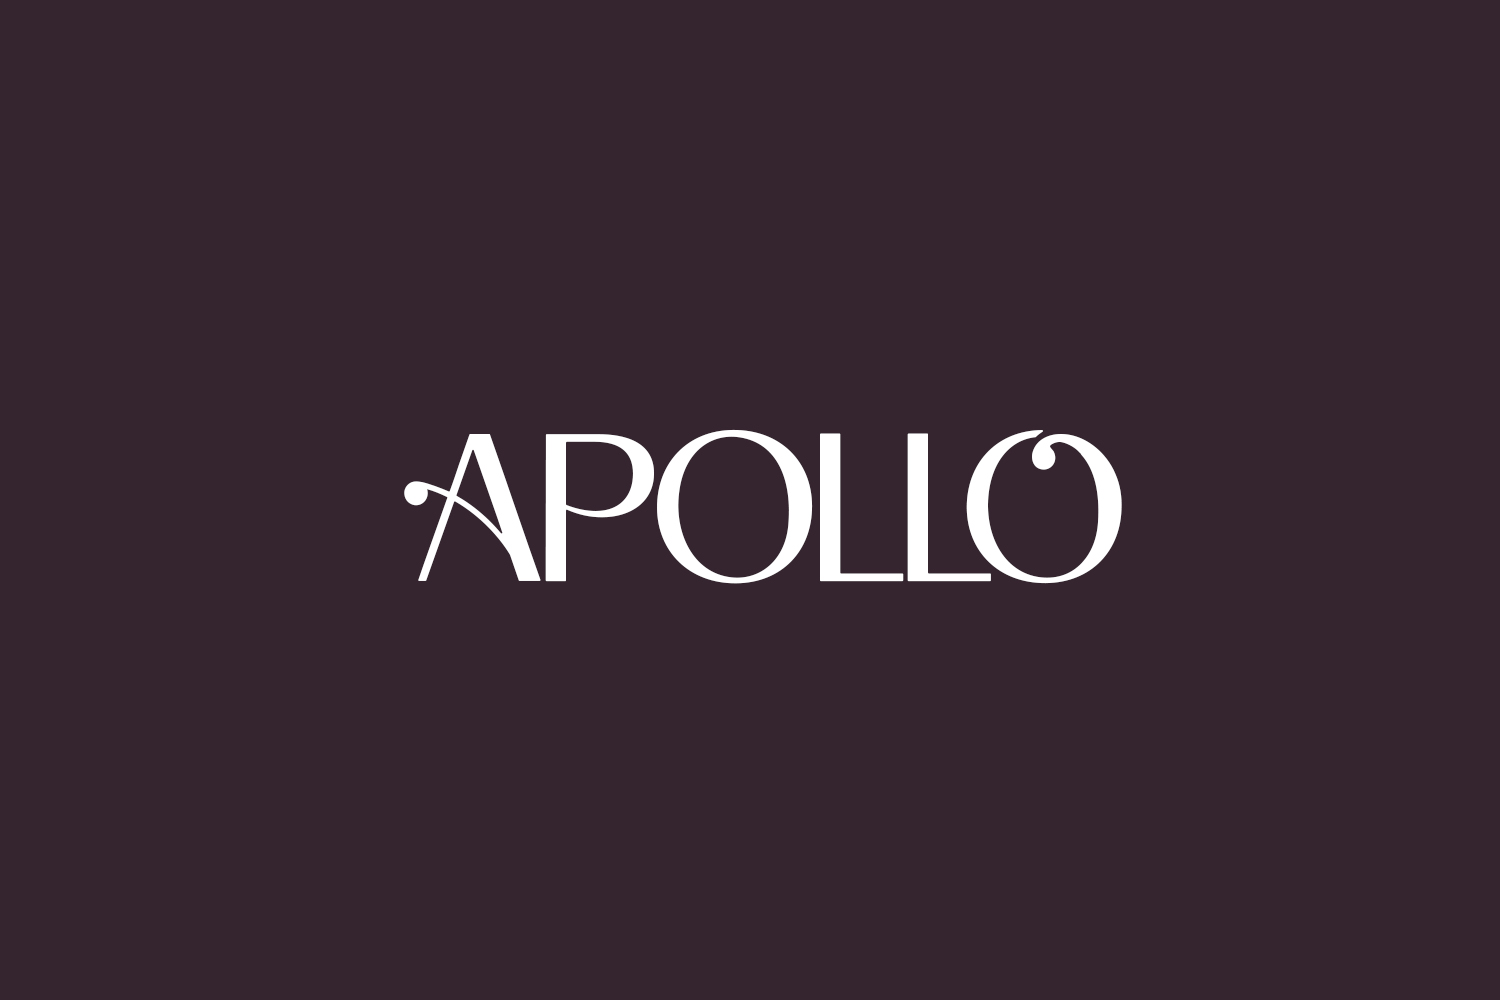 Apollo Free Font